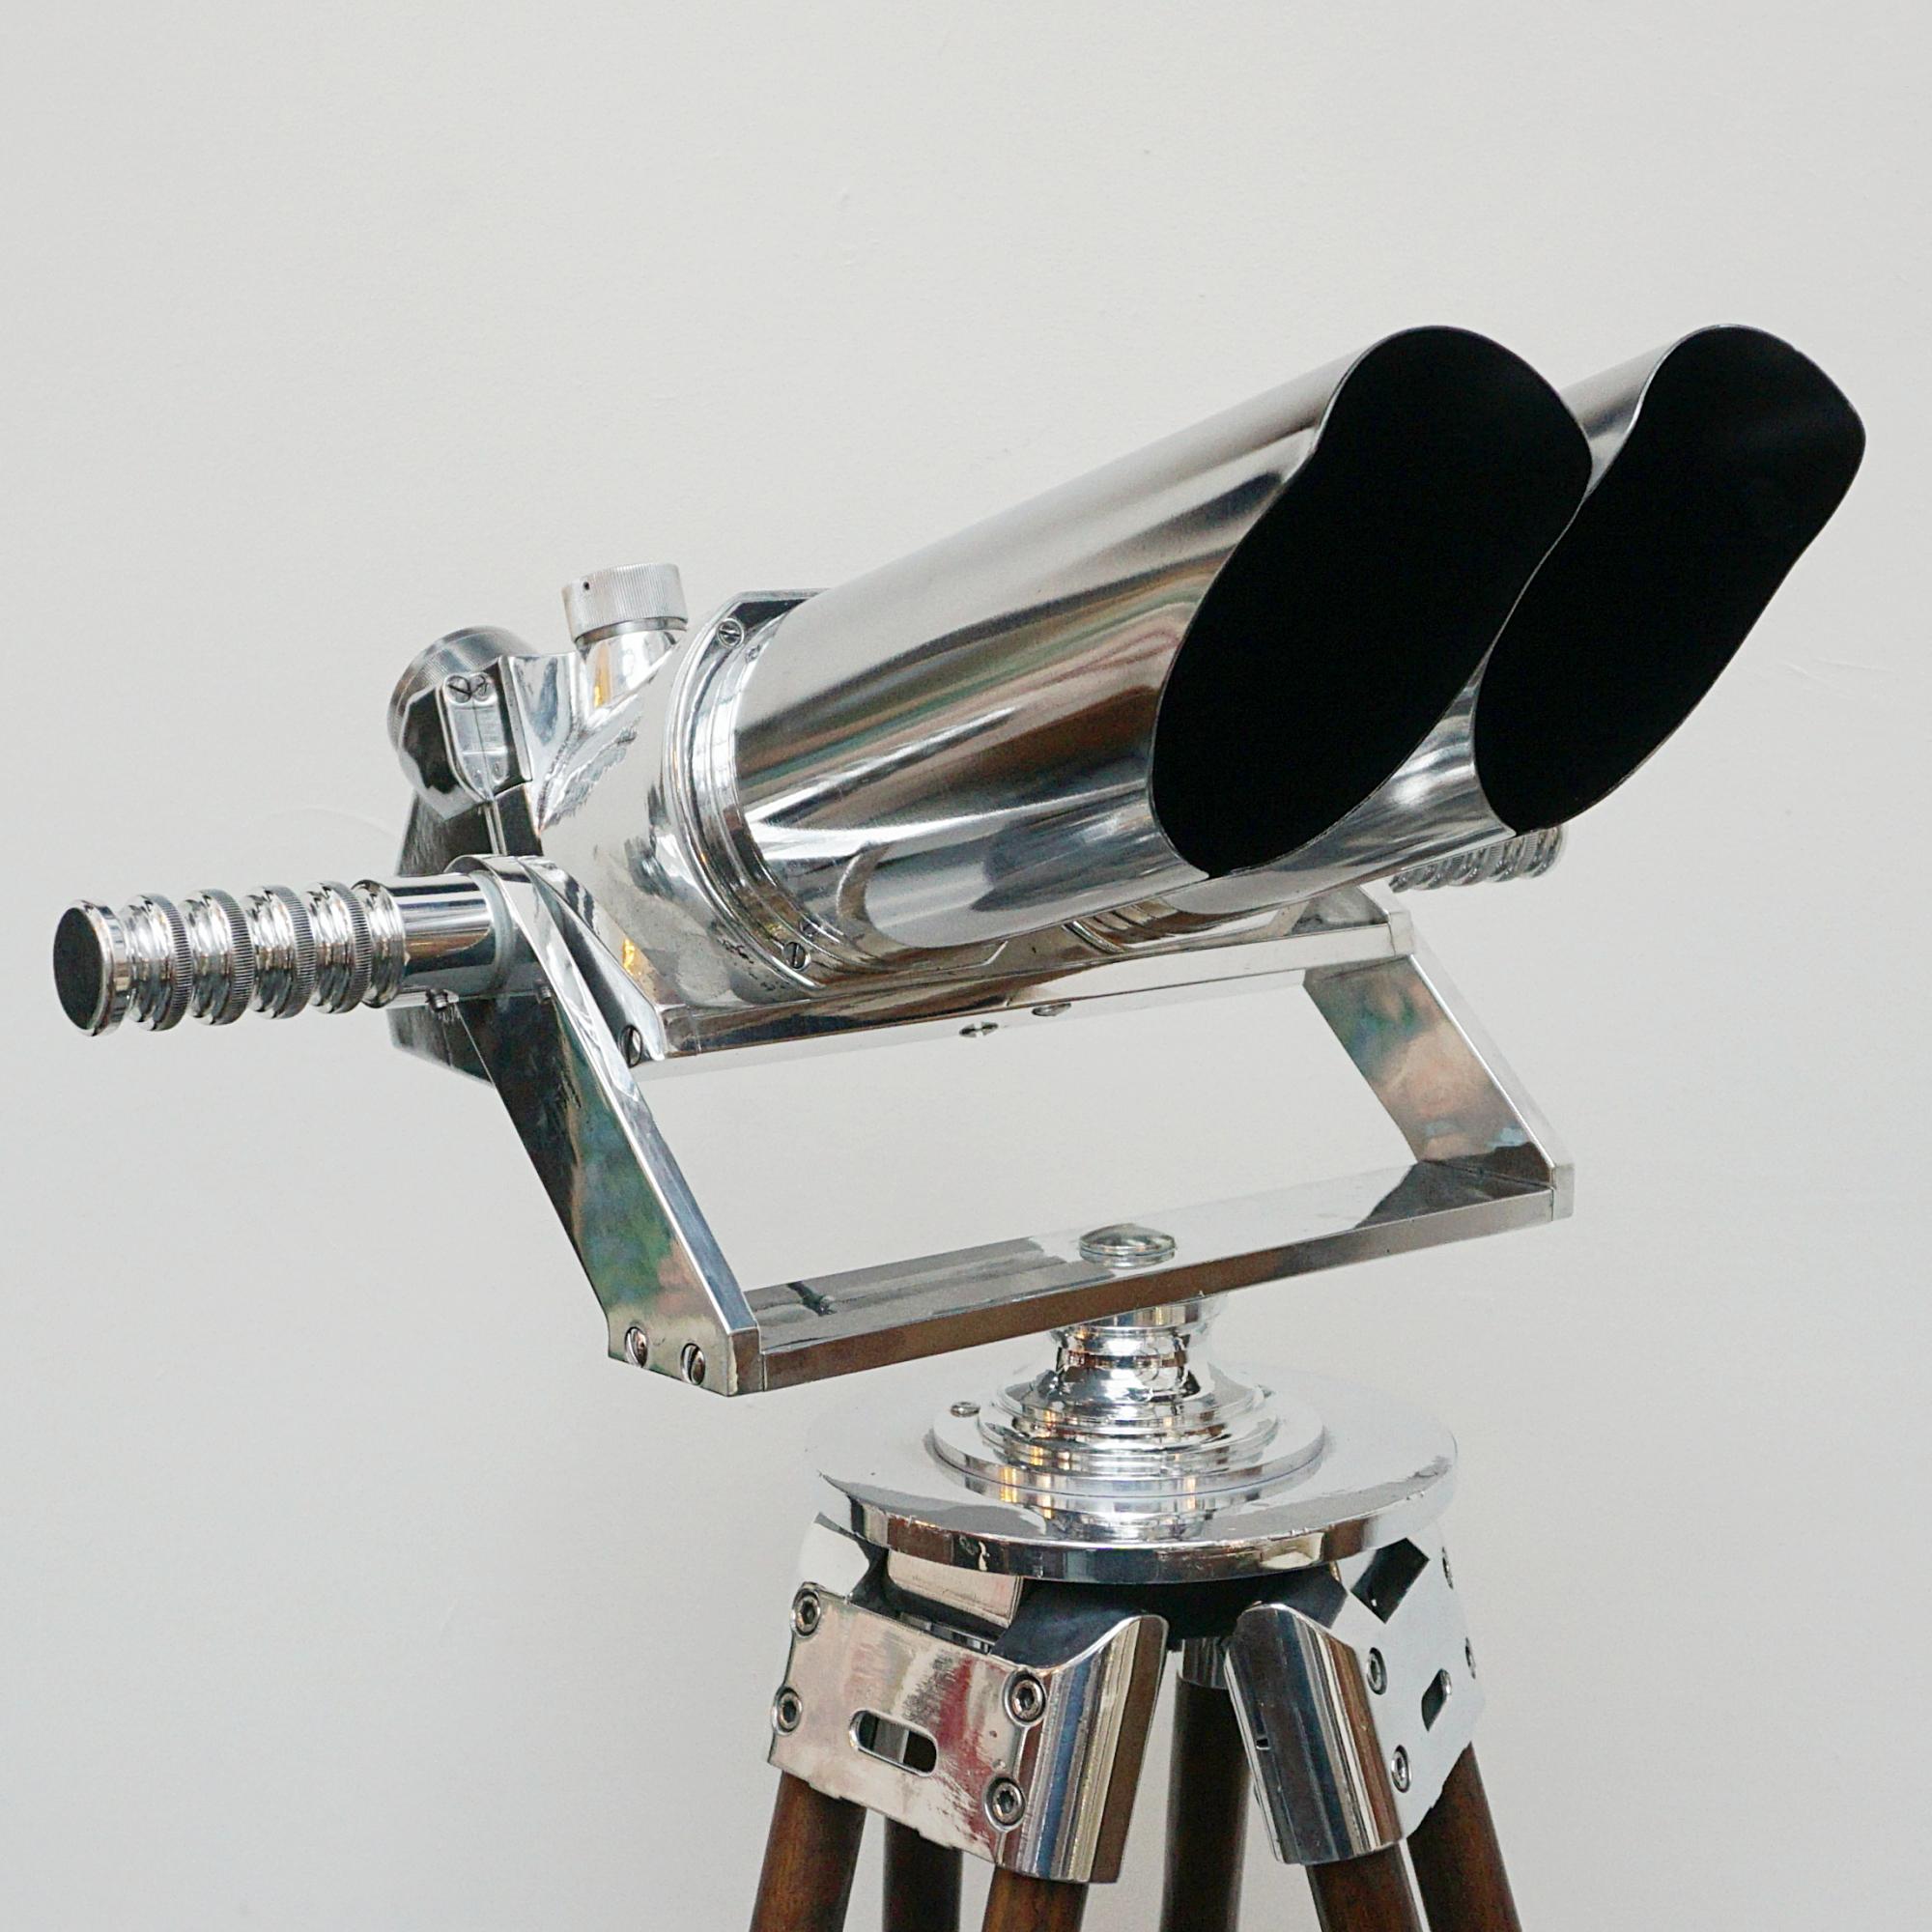 10 X 80 WW11 Marine Binoculars by Zeiss For Sale 2